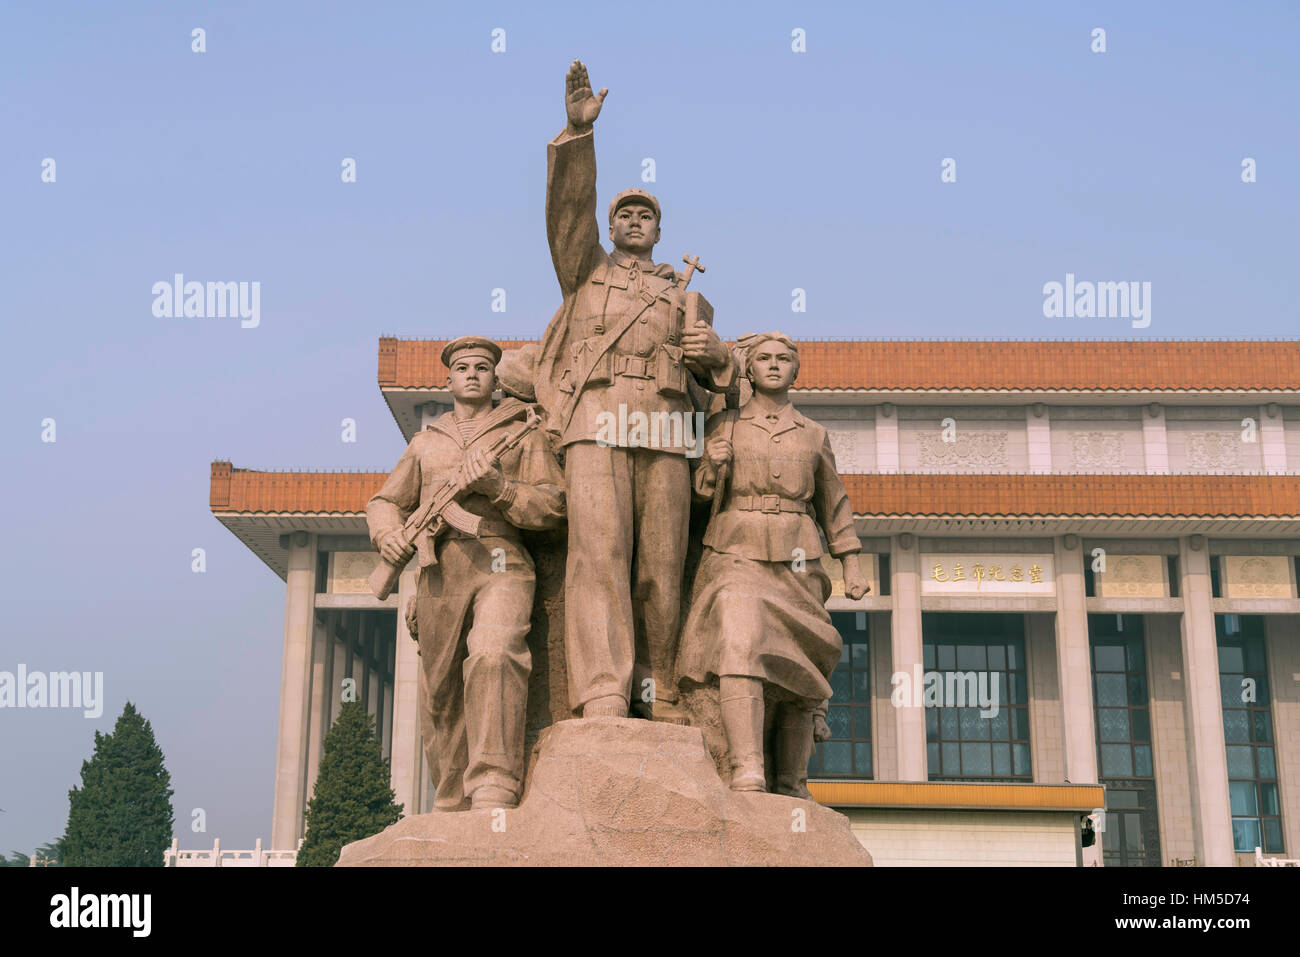 Monument situé en face du mausolée de Mao, Beijing, Chine Banque D'Images